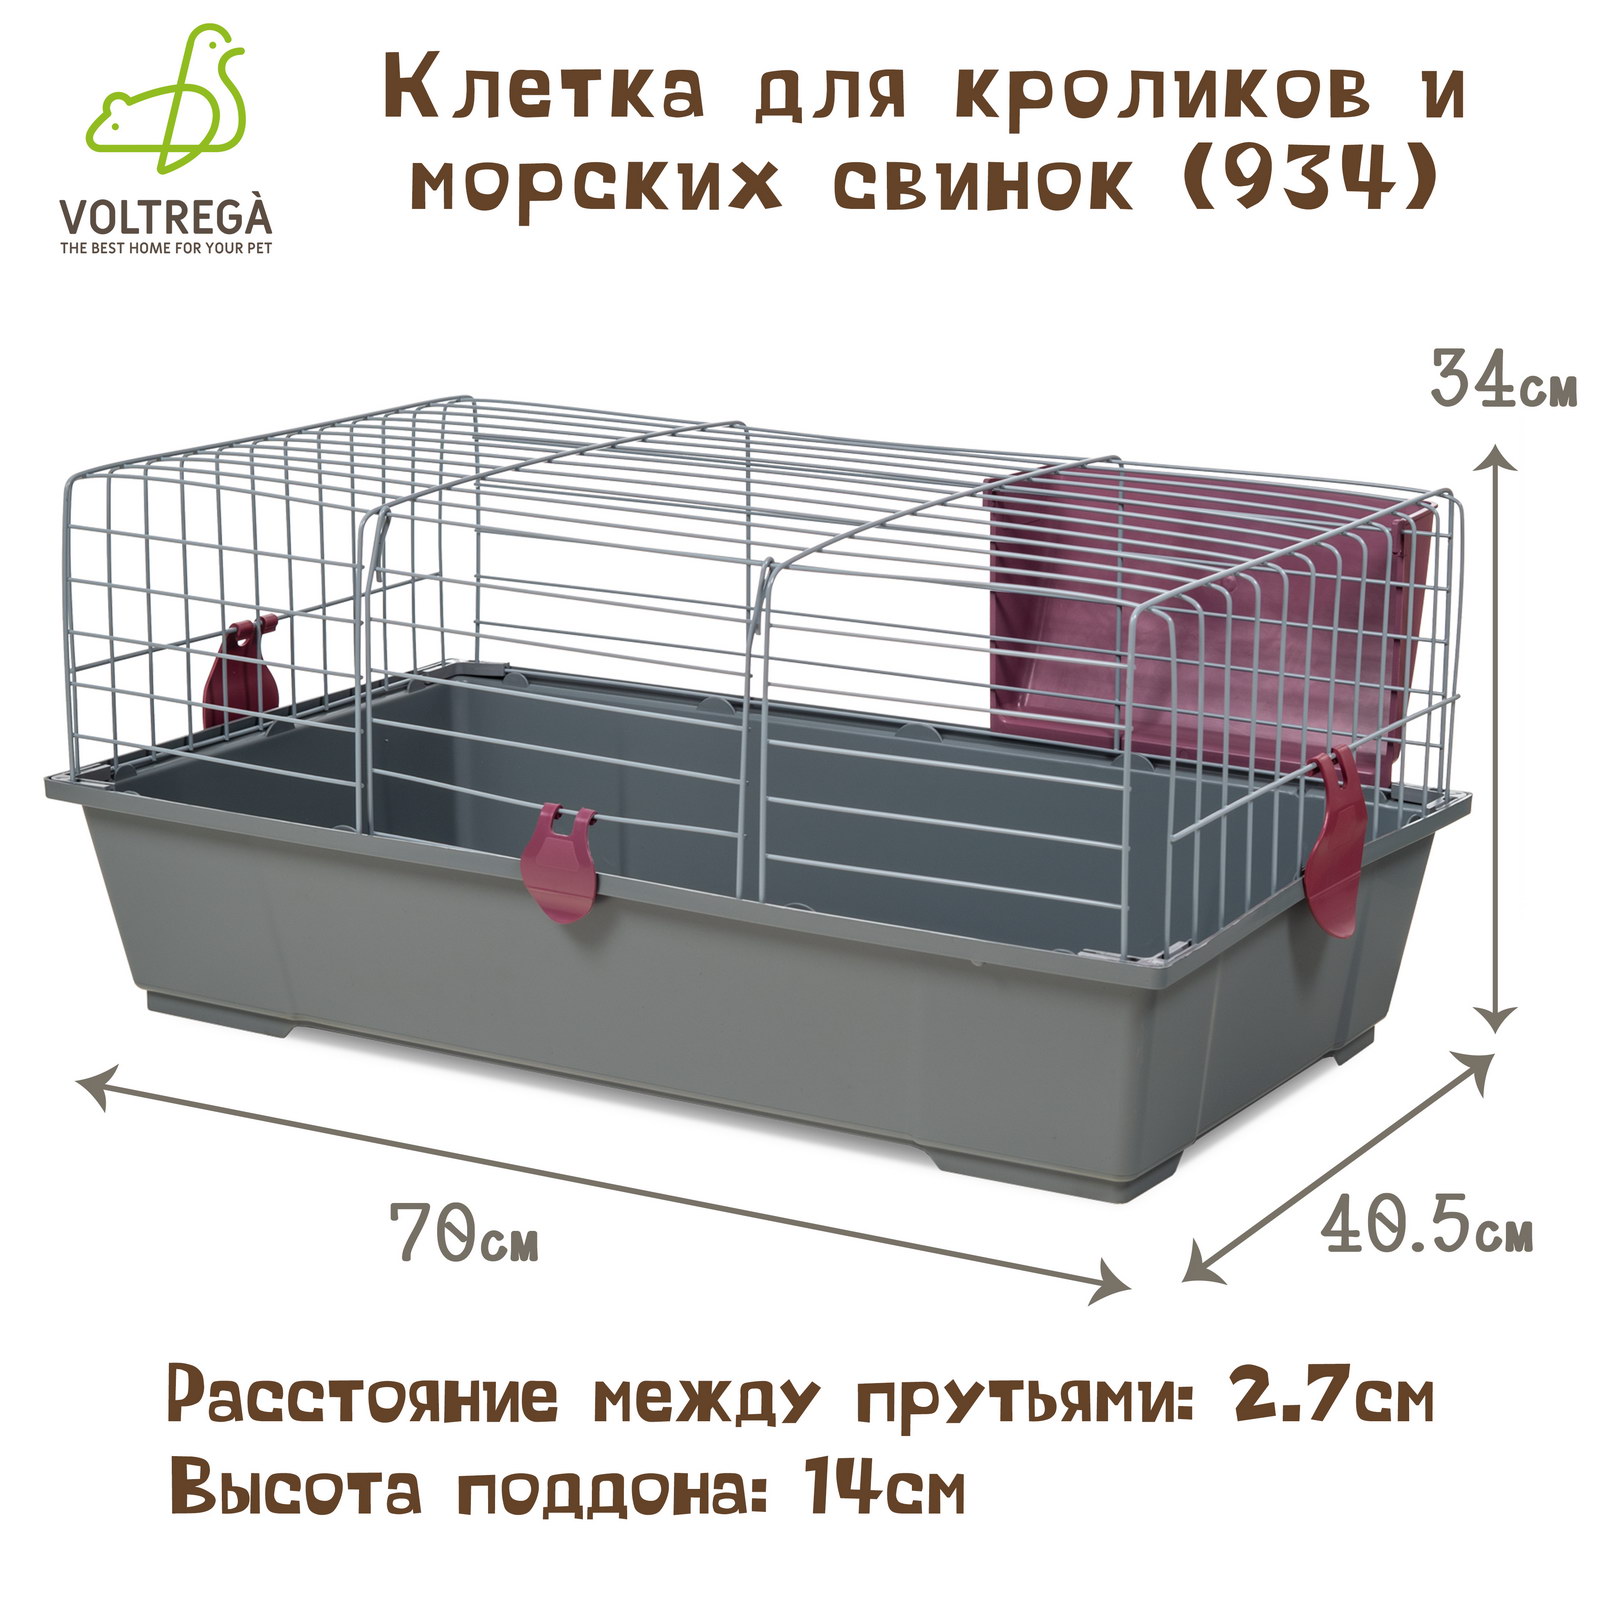 Клетка для кроликов и морских свинок VOLTREGA 934, серо-бордовый, 70 x 40. 5x 34 см